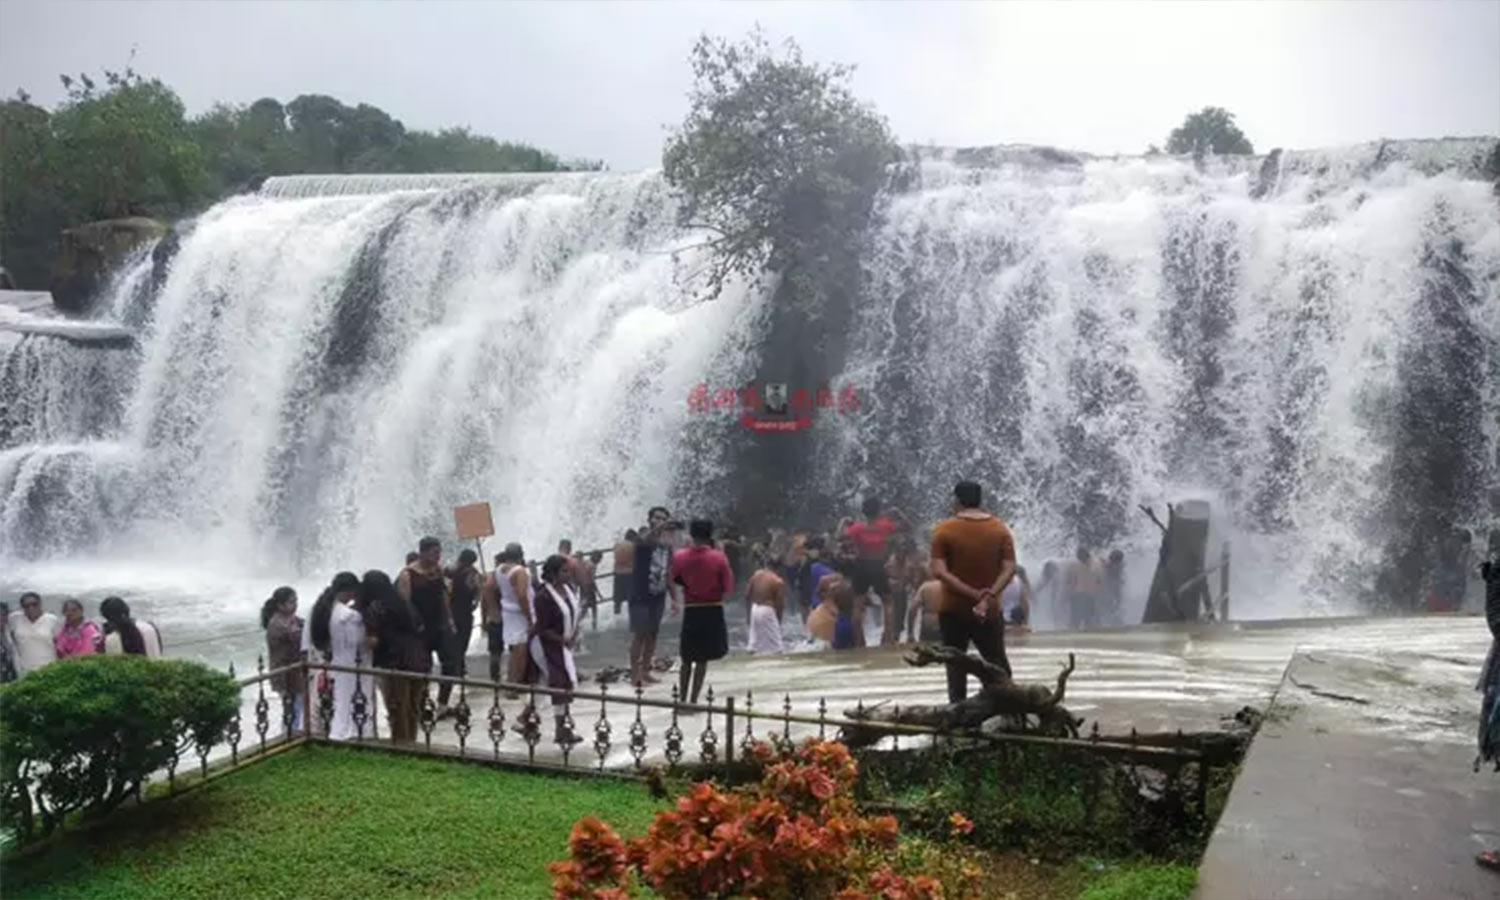 திற்பரப்பு அருவியில் சுற்றுலா பயணிகள் ஆனந்த குளியல்...! | Tourists enjoy  bathing in Thirparappu Falls...!